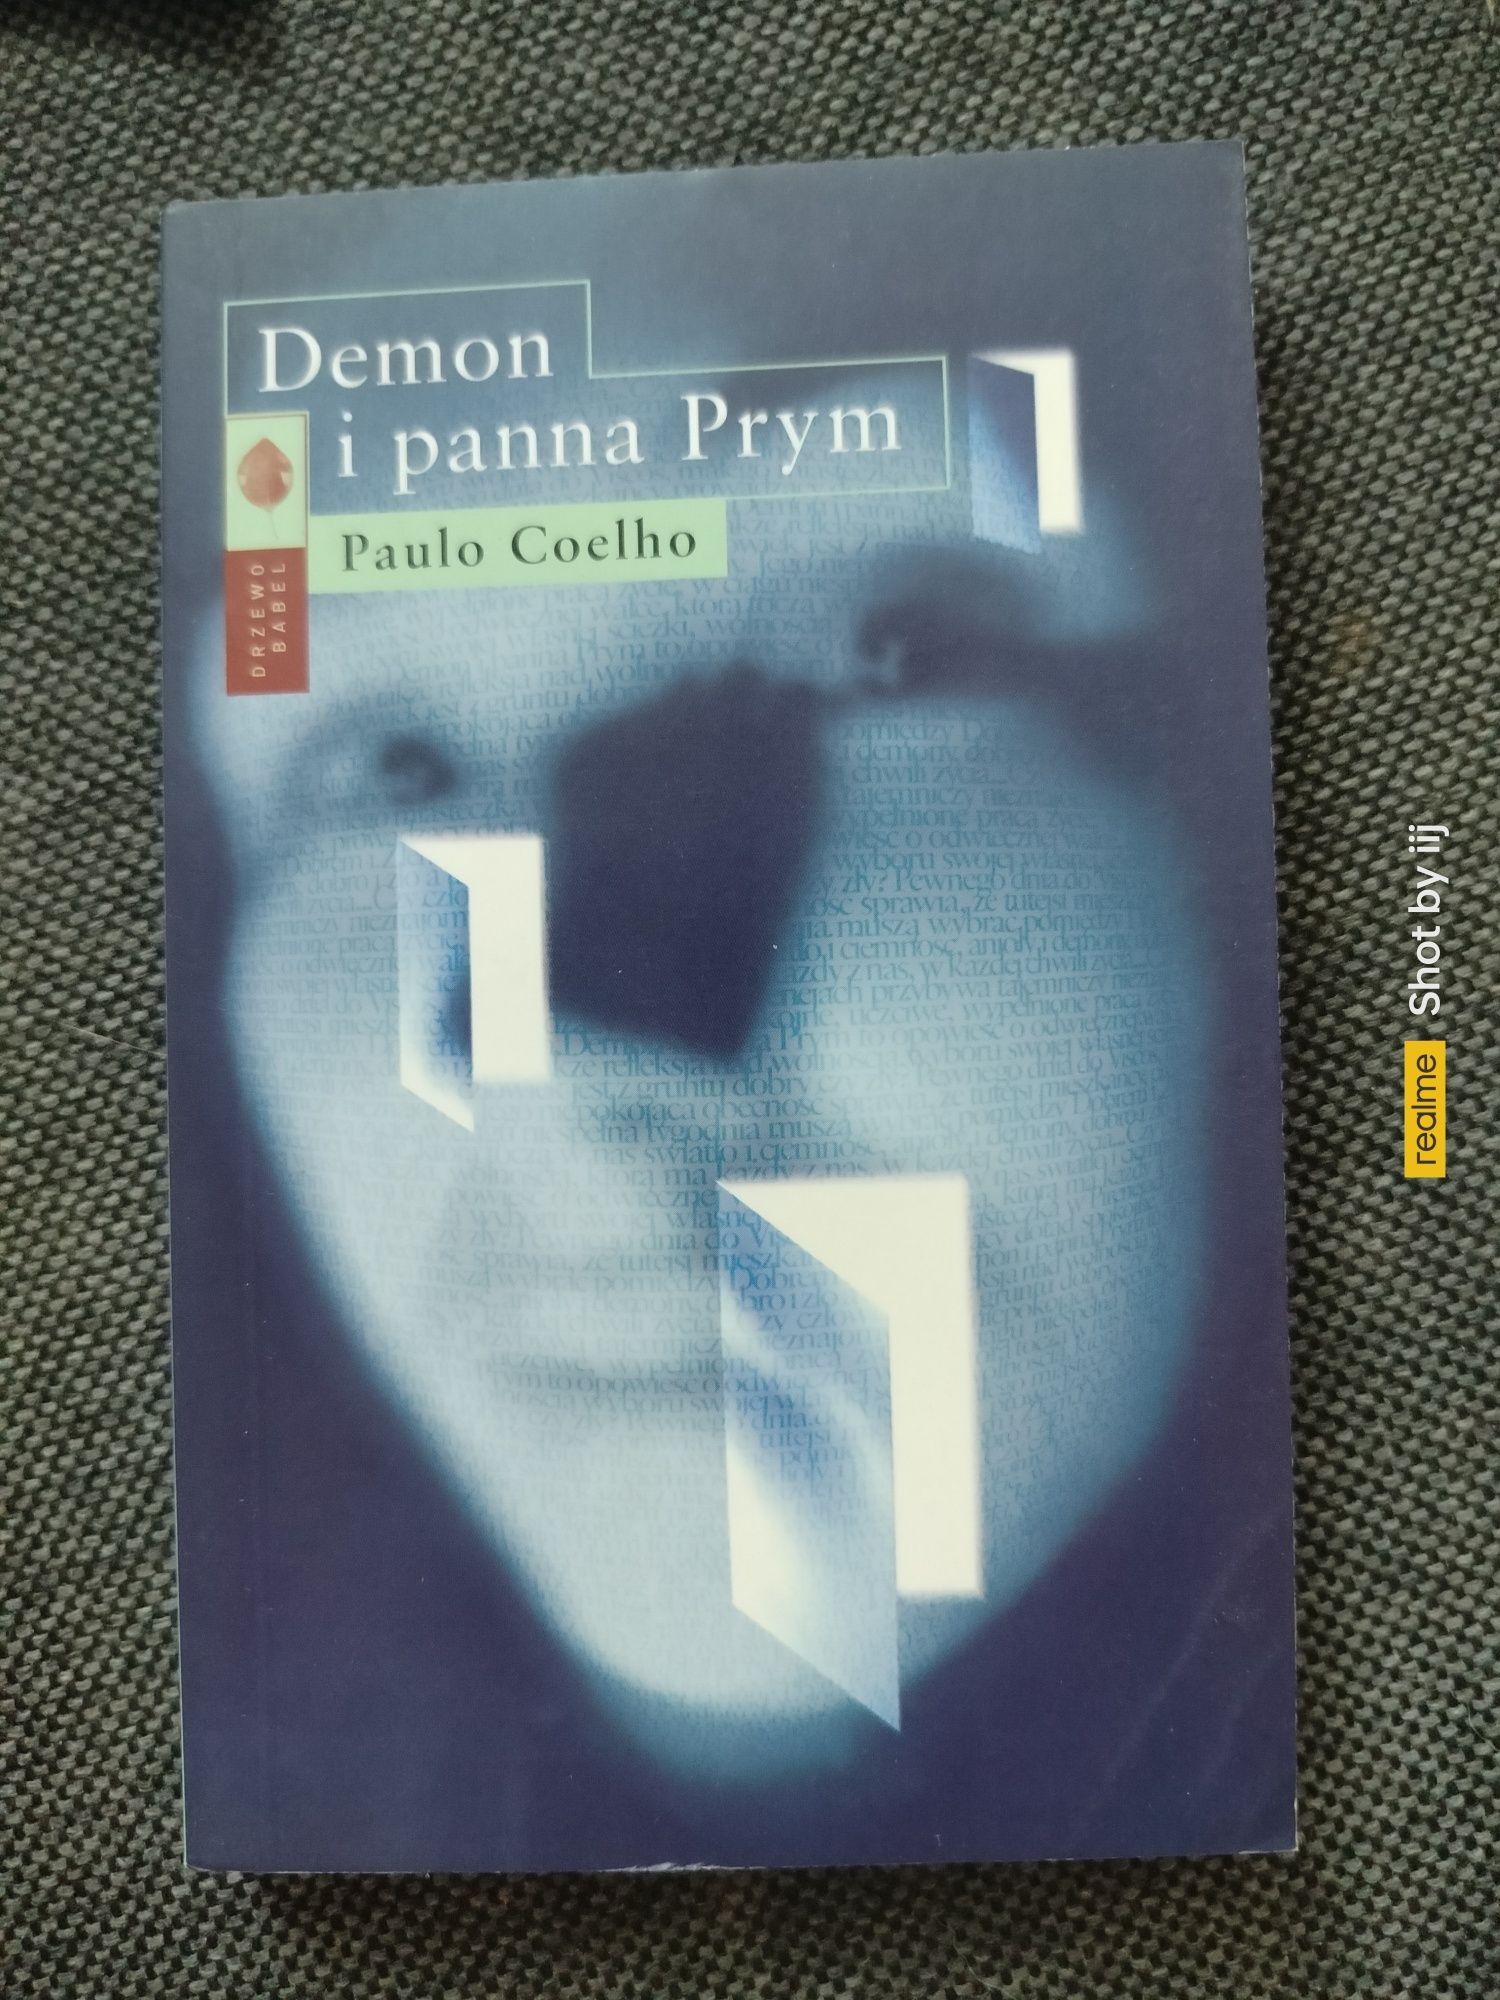 Książki Paulo Coelho